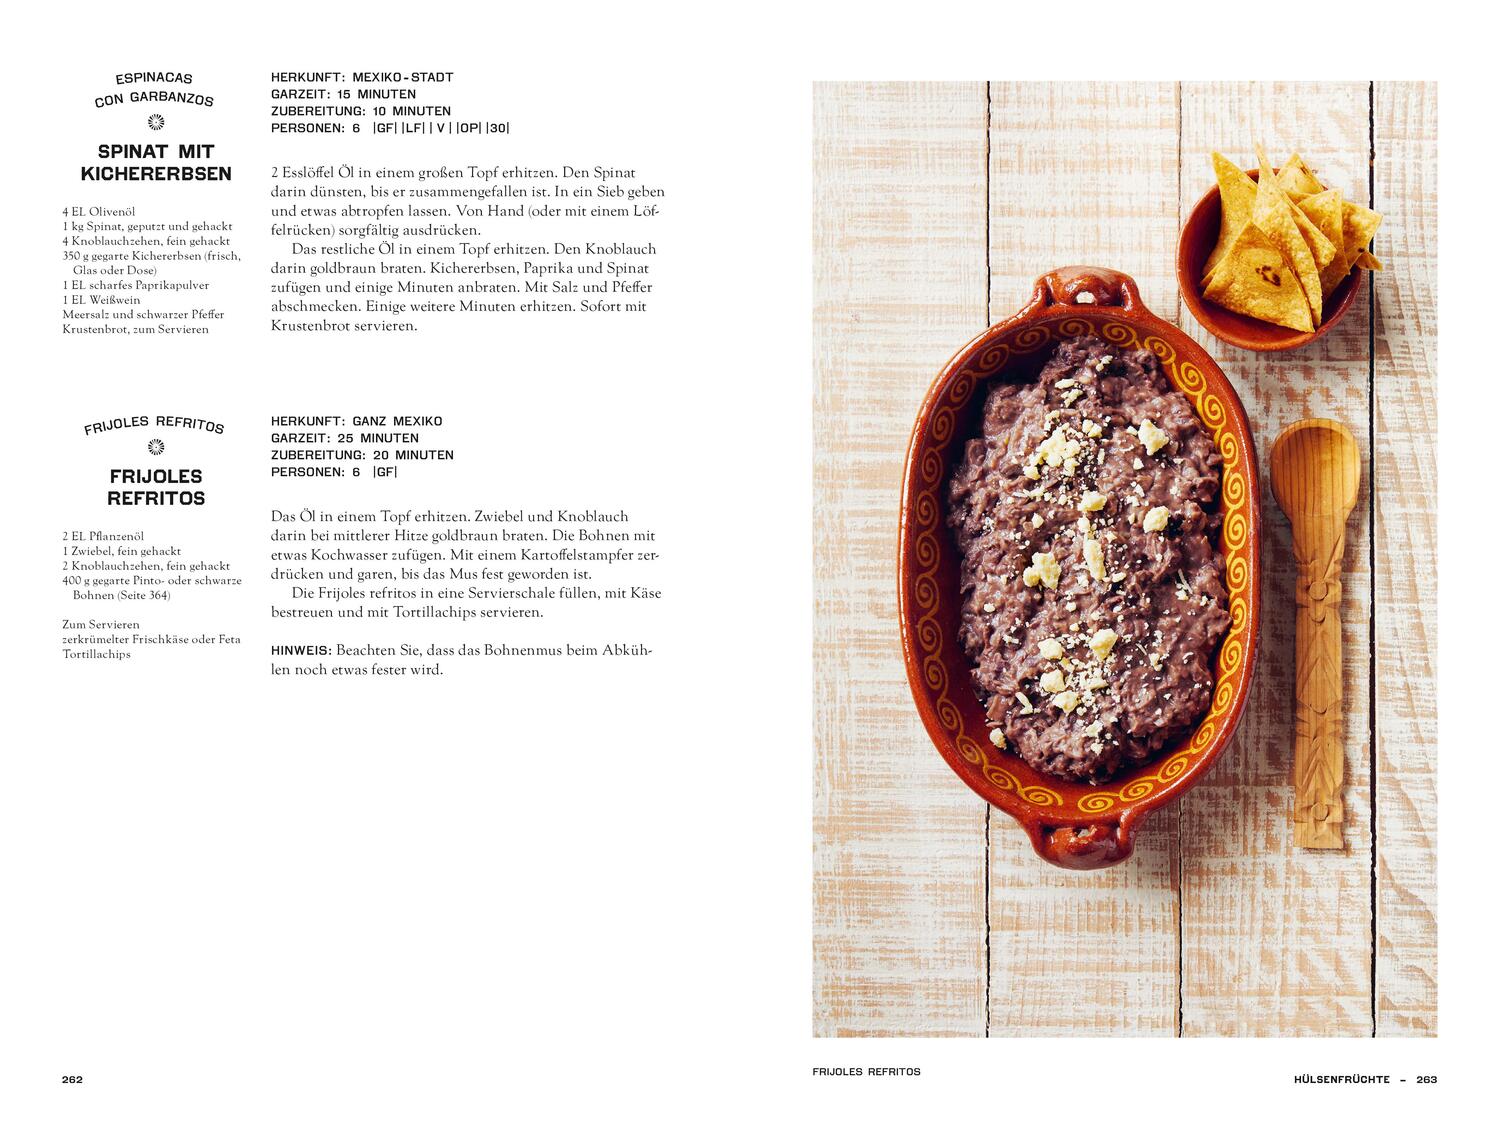 Bild: 9783947426256 | Mexiko vegetarisch - Das Kochbuch | Margarita Carrillo Arronte | Buch